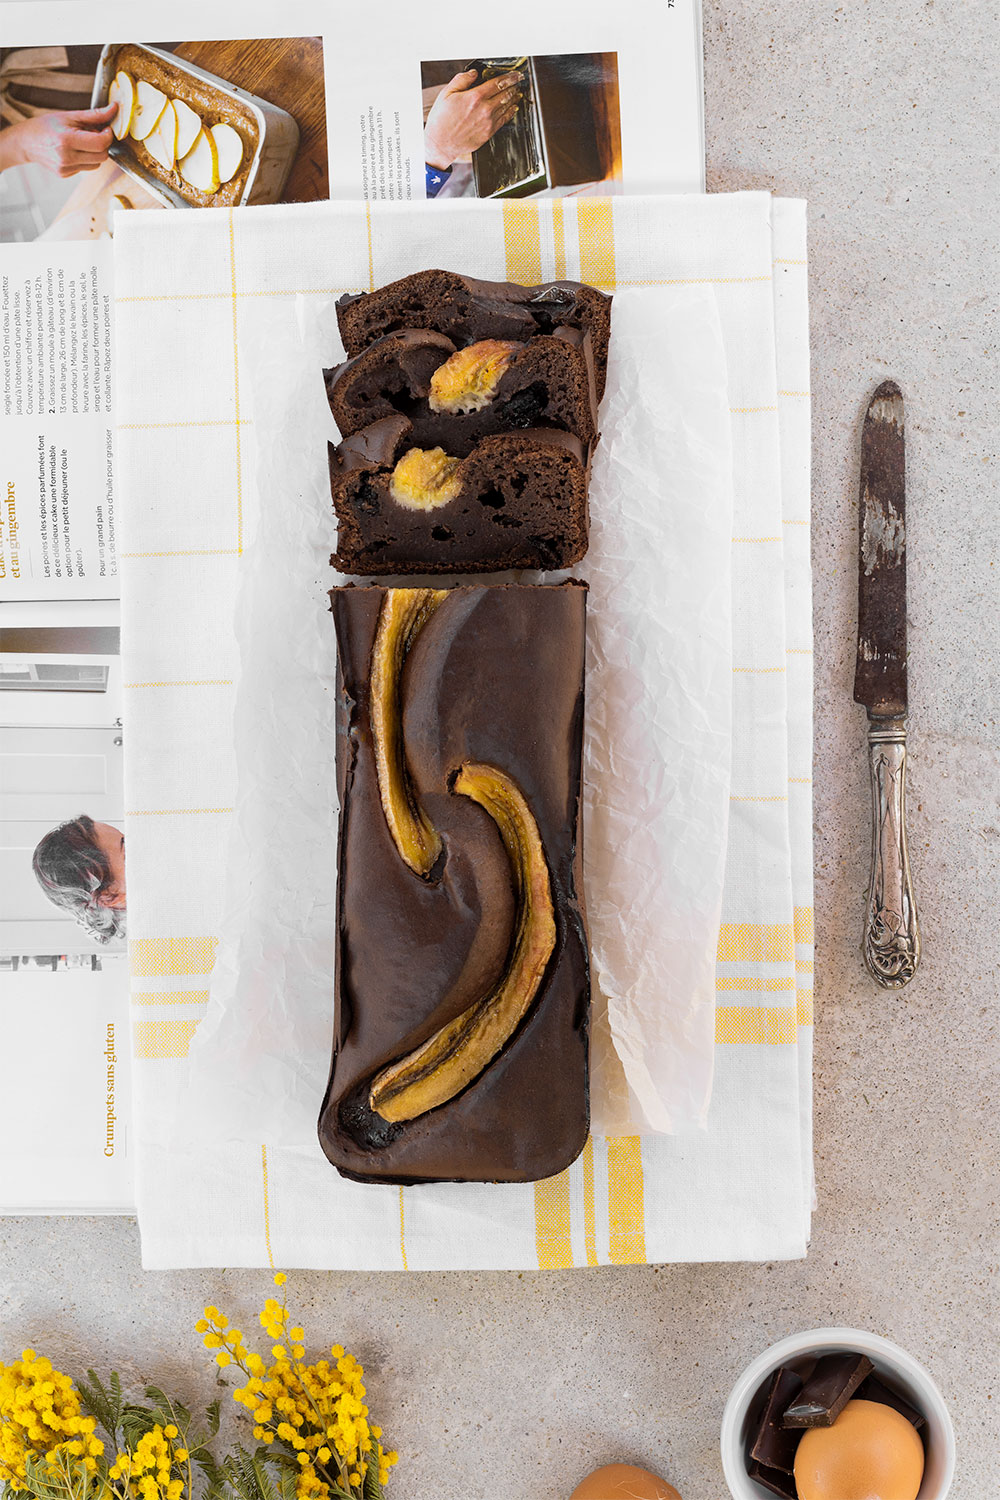 Banana bread en flatlay, avec des parts coupées, réalisé à partir du Fit Chocolate de Natural Mojo